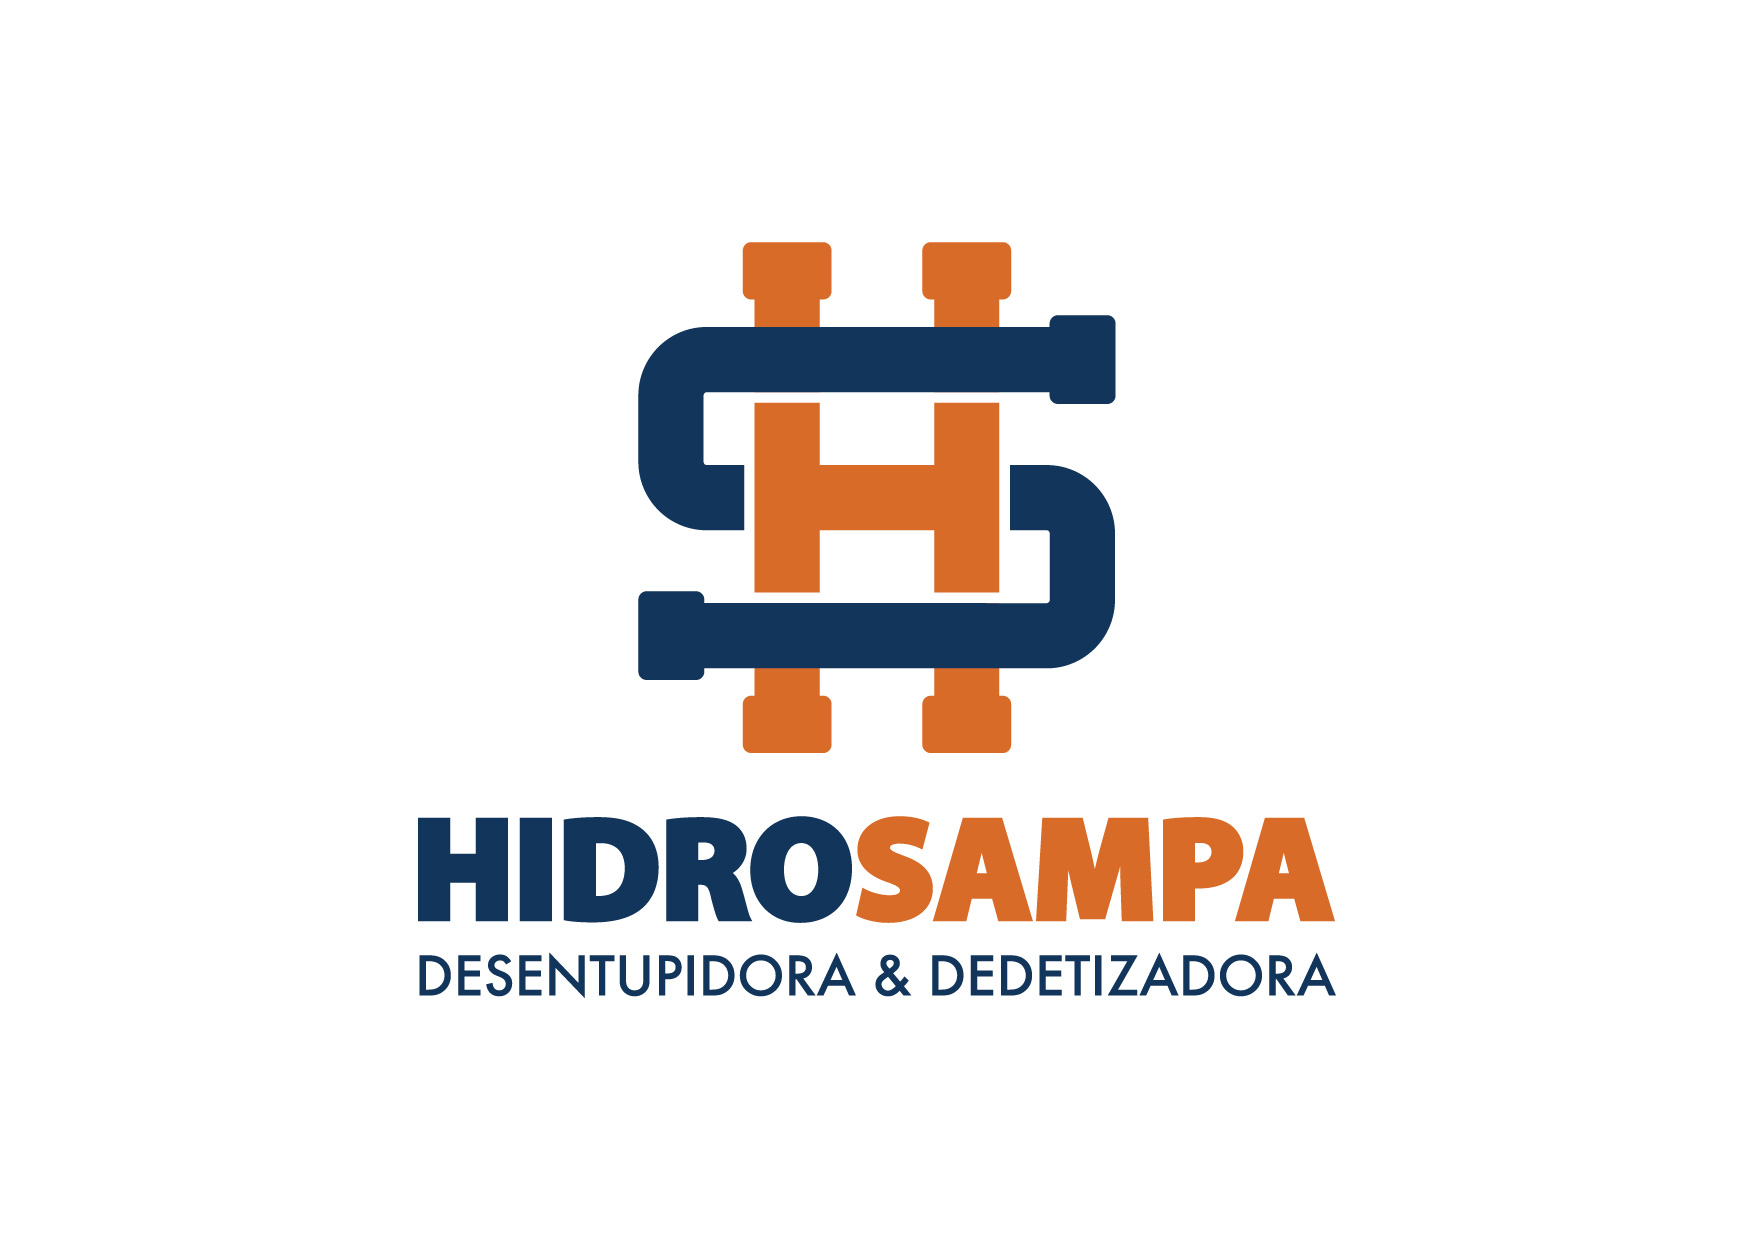 HIDROSAMPA DESENTUPIDORA E DEDETIZADORA - São Paulo, SP